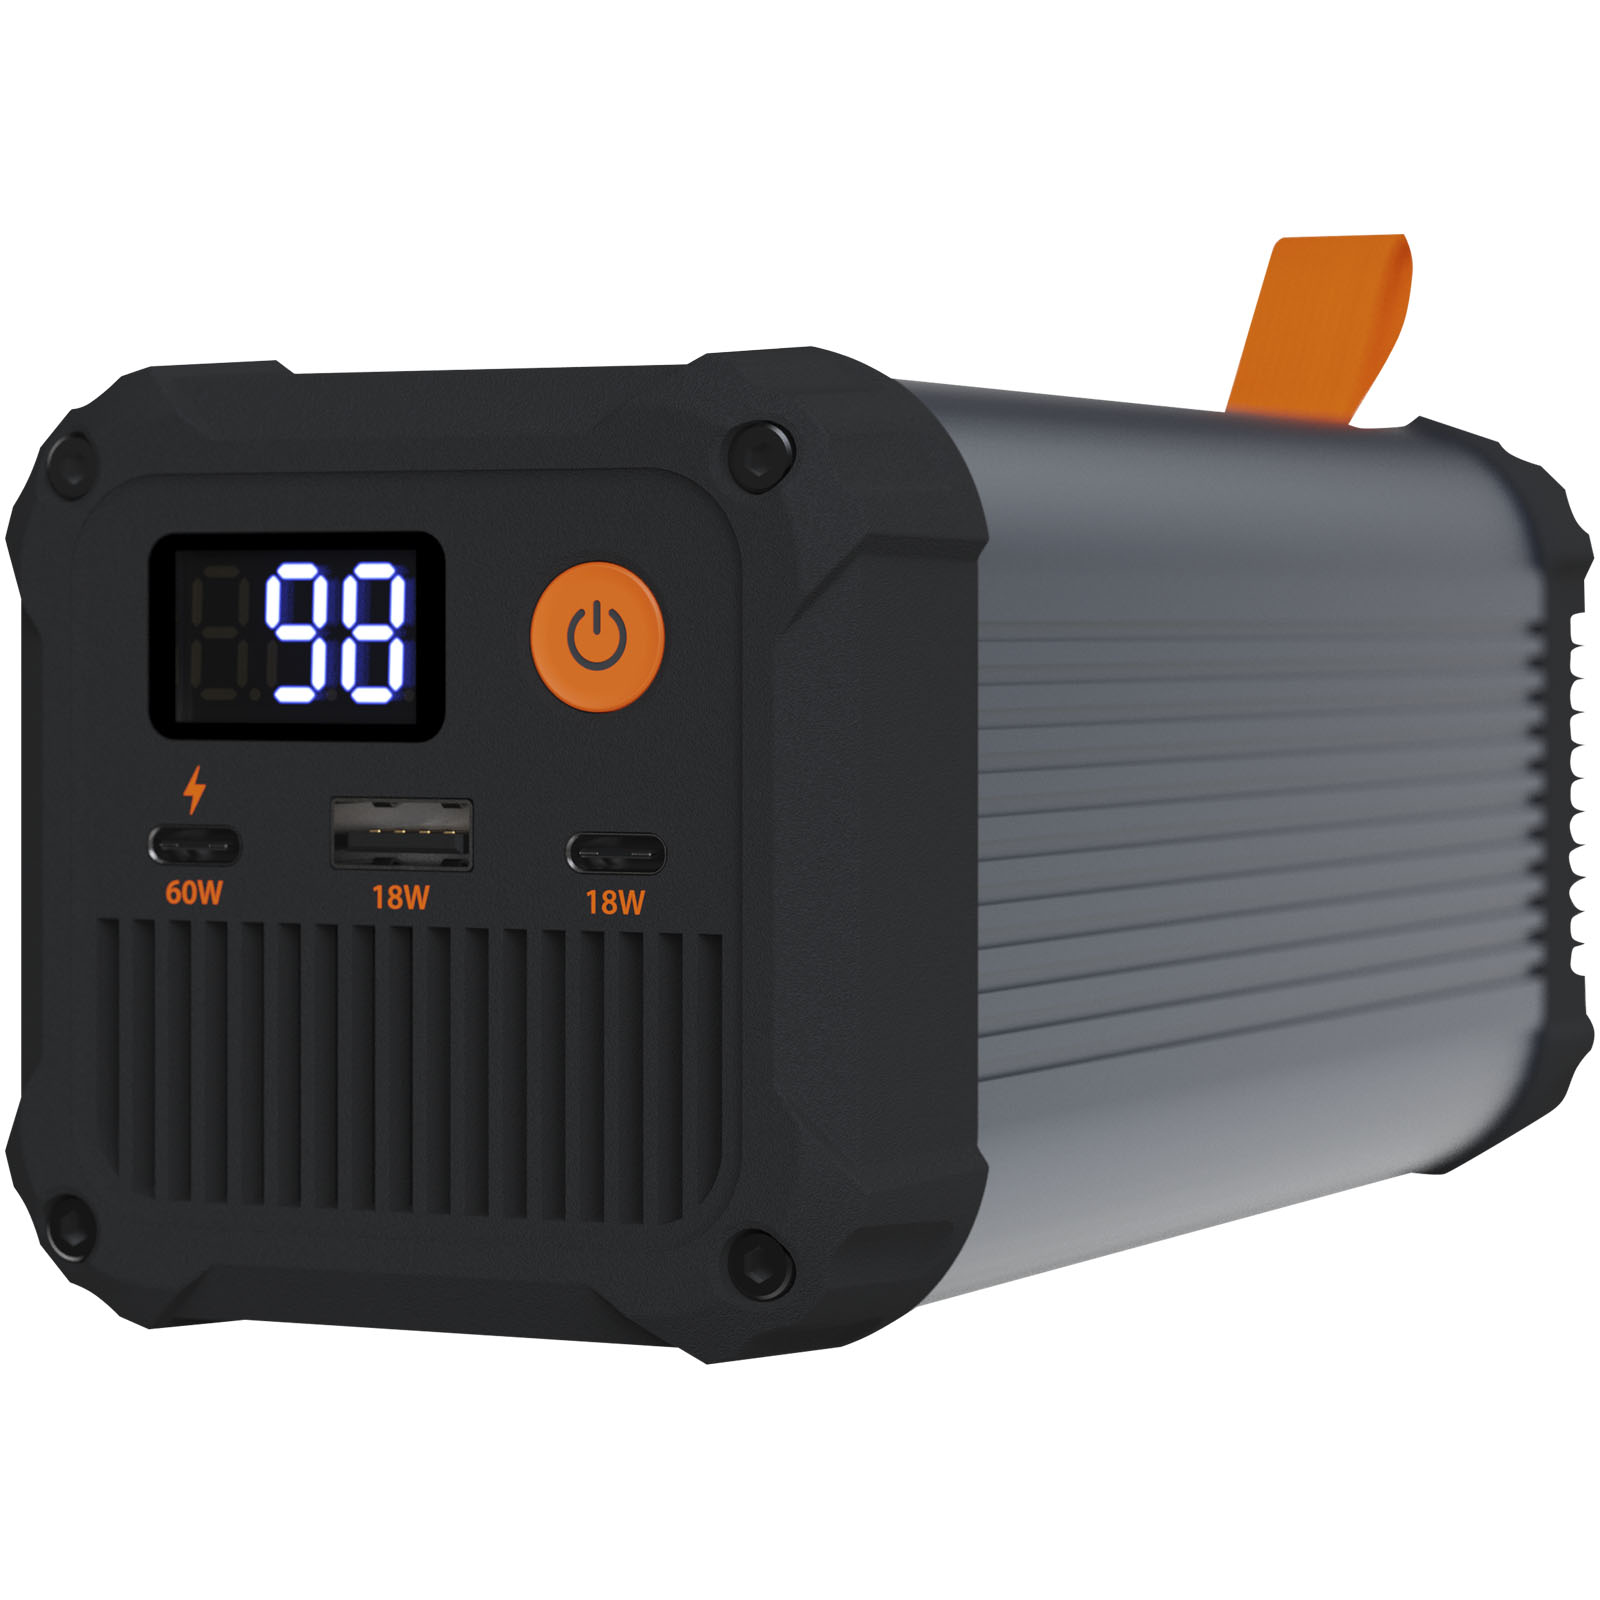 Technologie - Batterie de secours portable Xtorm XR210 Xtreme de 25 600 mAh avec alimentation de 100 W